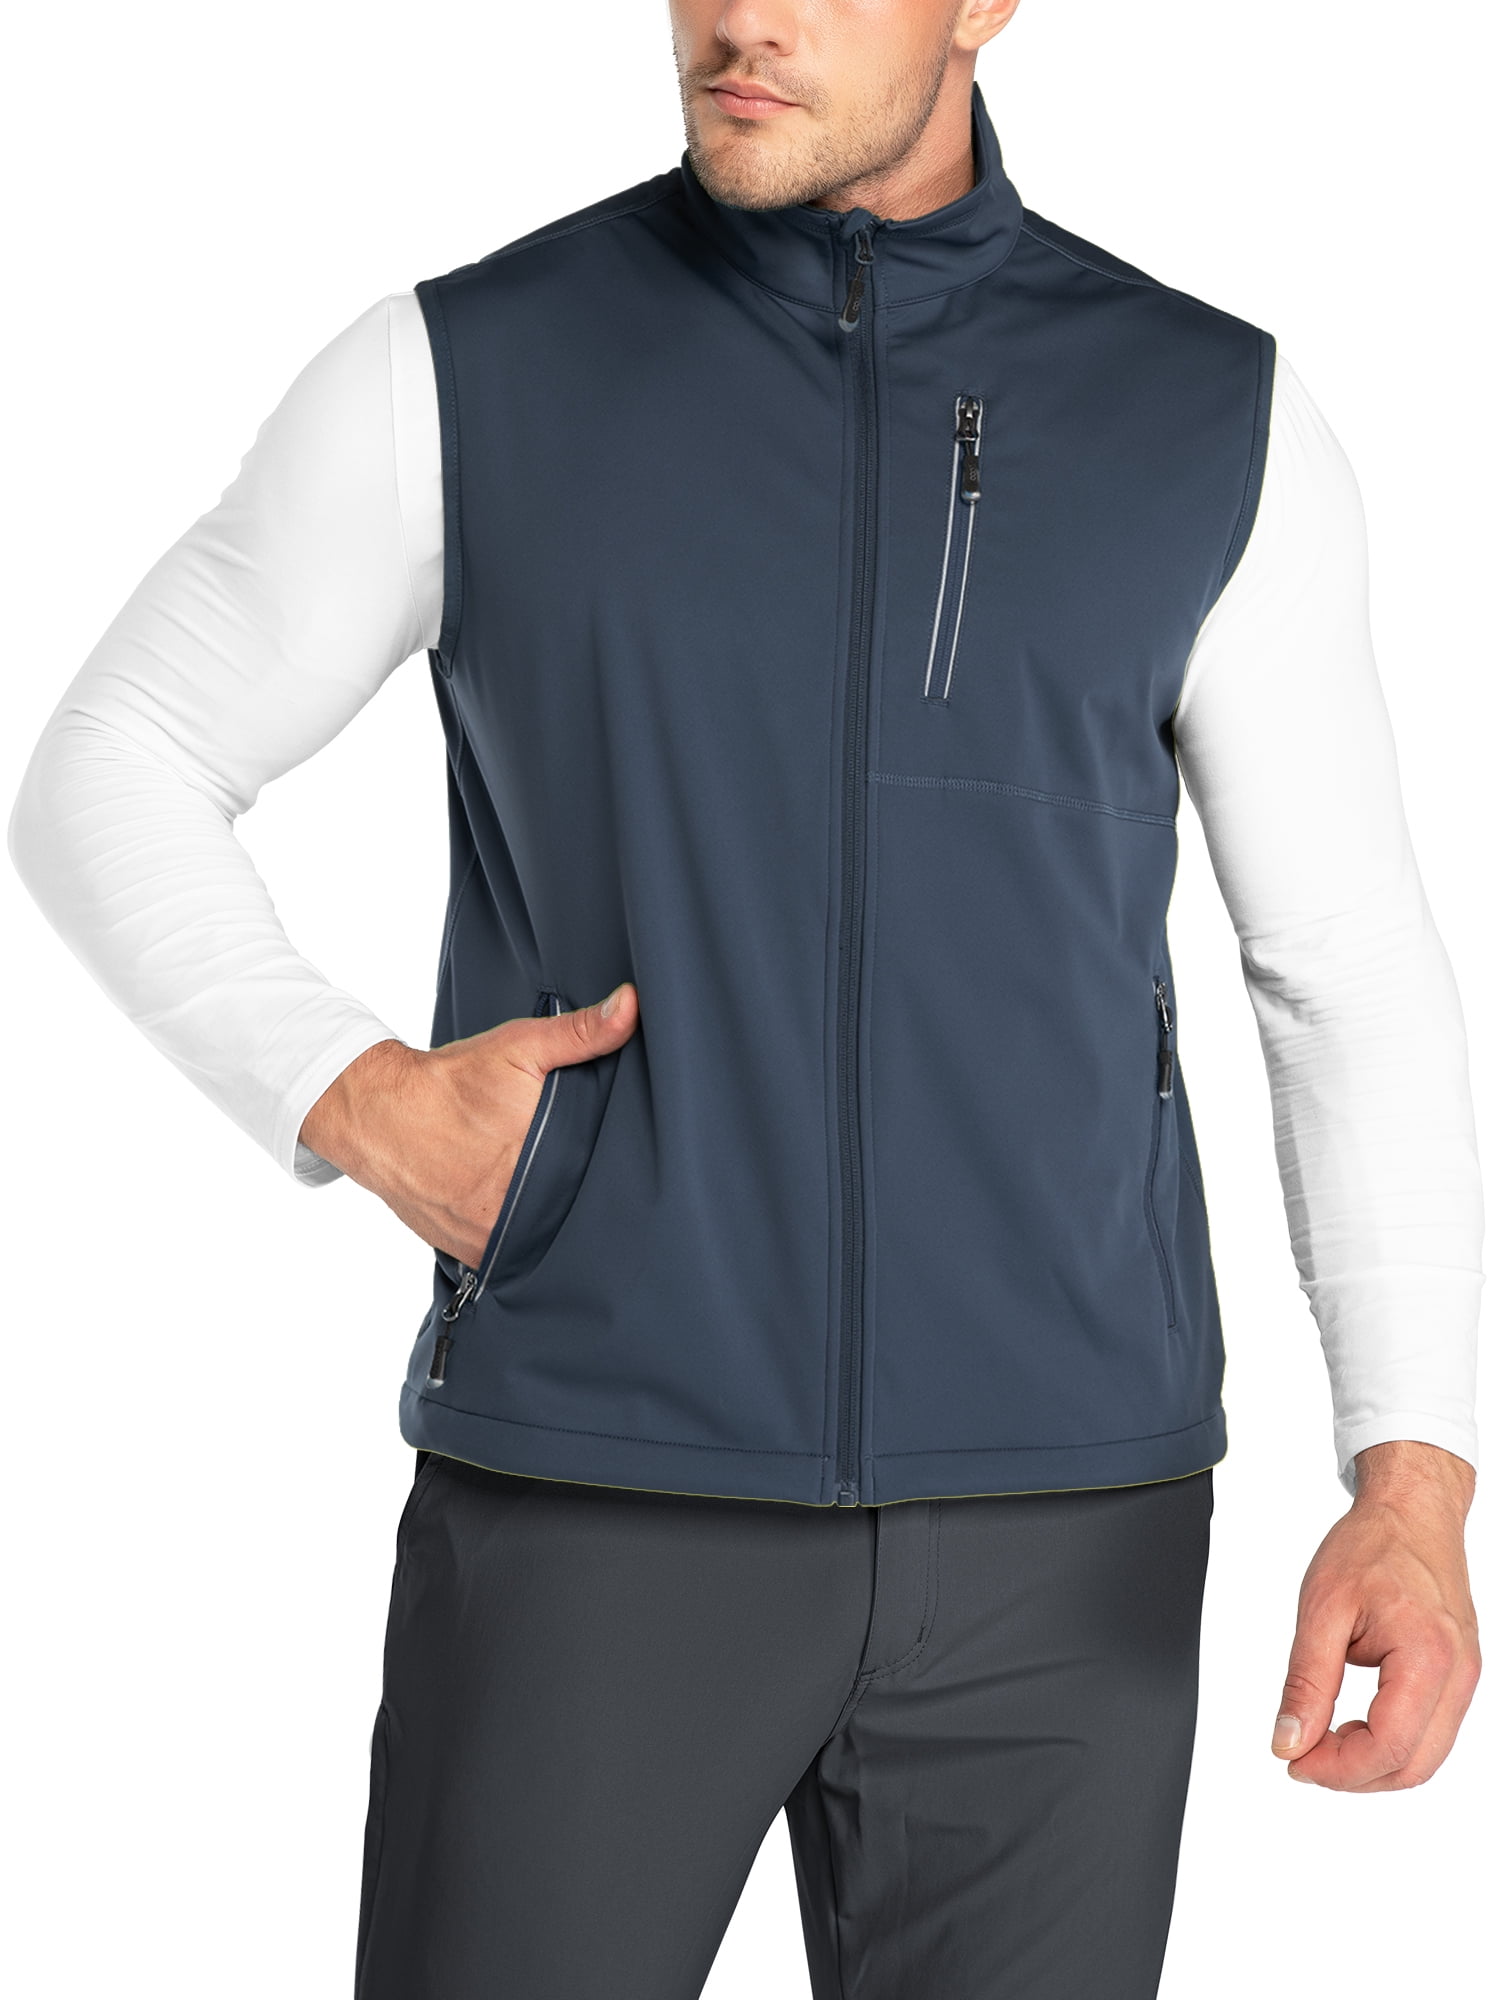 Men's Windproof Soft Fleece Vest Outdoor Full Zip Sleeveless Jacket with Pockets 